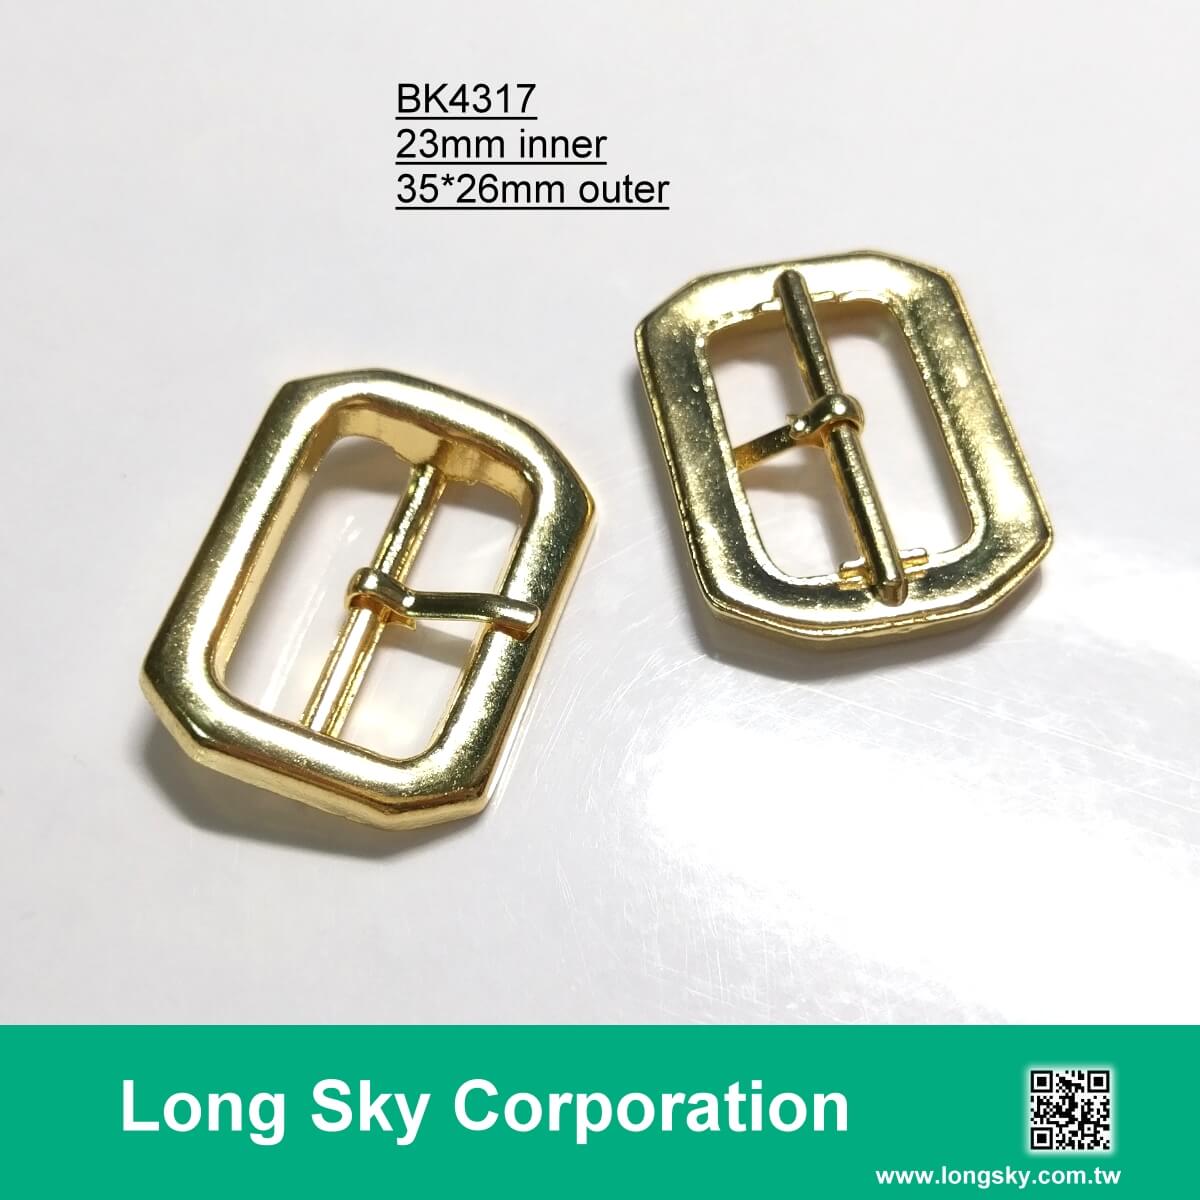 (#BK4317) 23mm inner gold metal prong buckle for belt